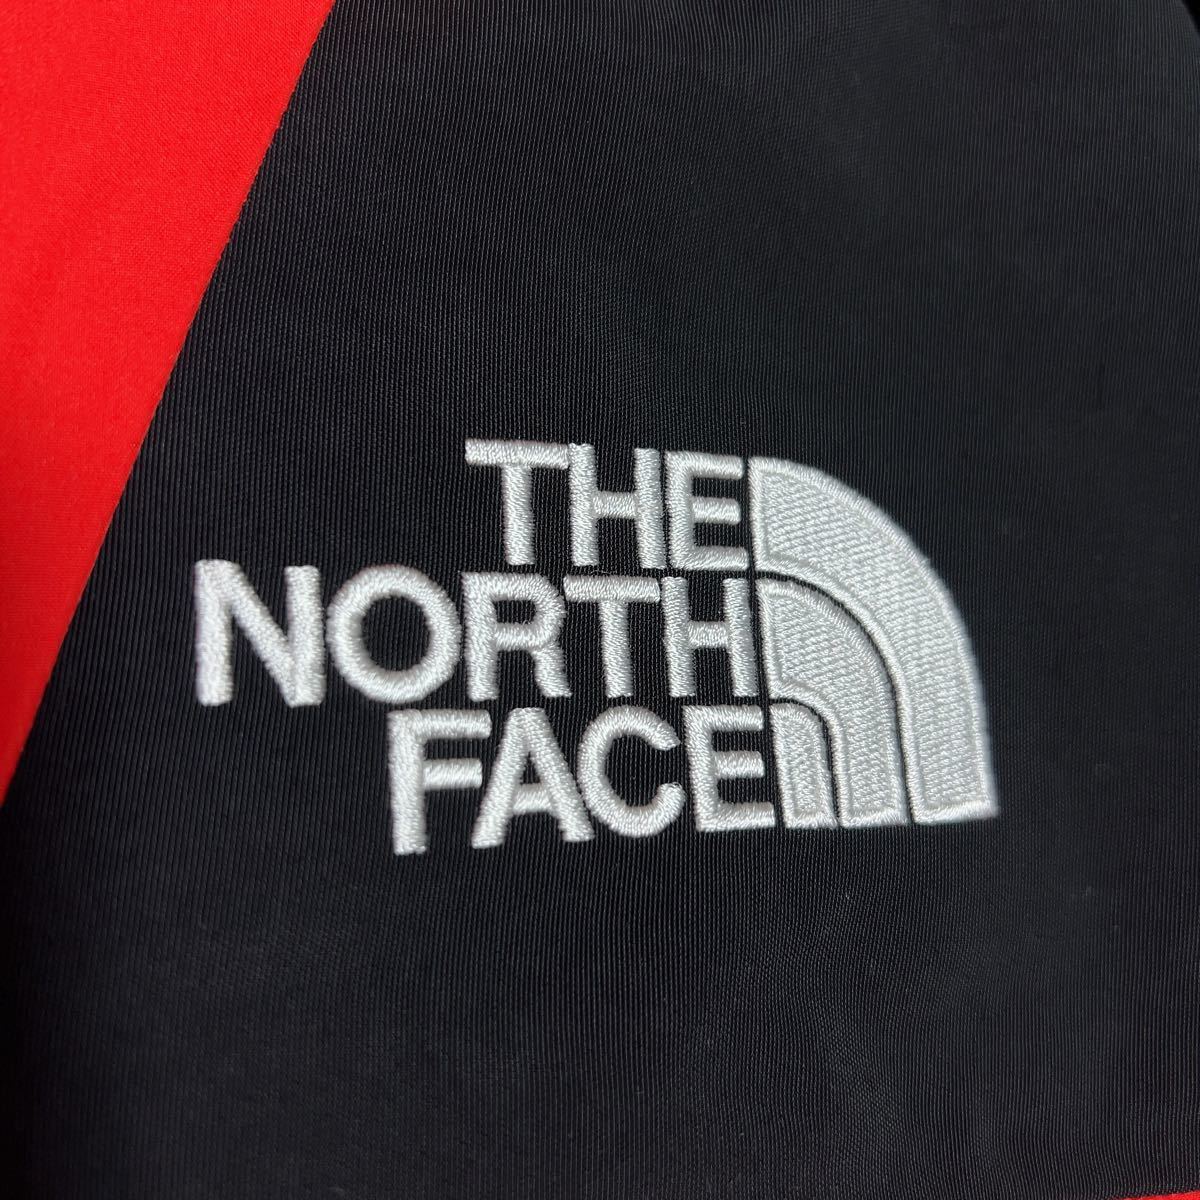 THE NORTH FACE ノースフェイス レトロマウンテンライトジャケット FUTURE LIGHT マウンテンパーカー